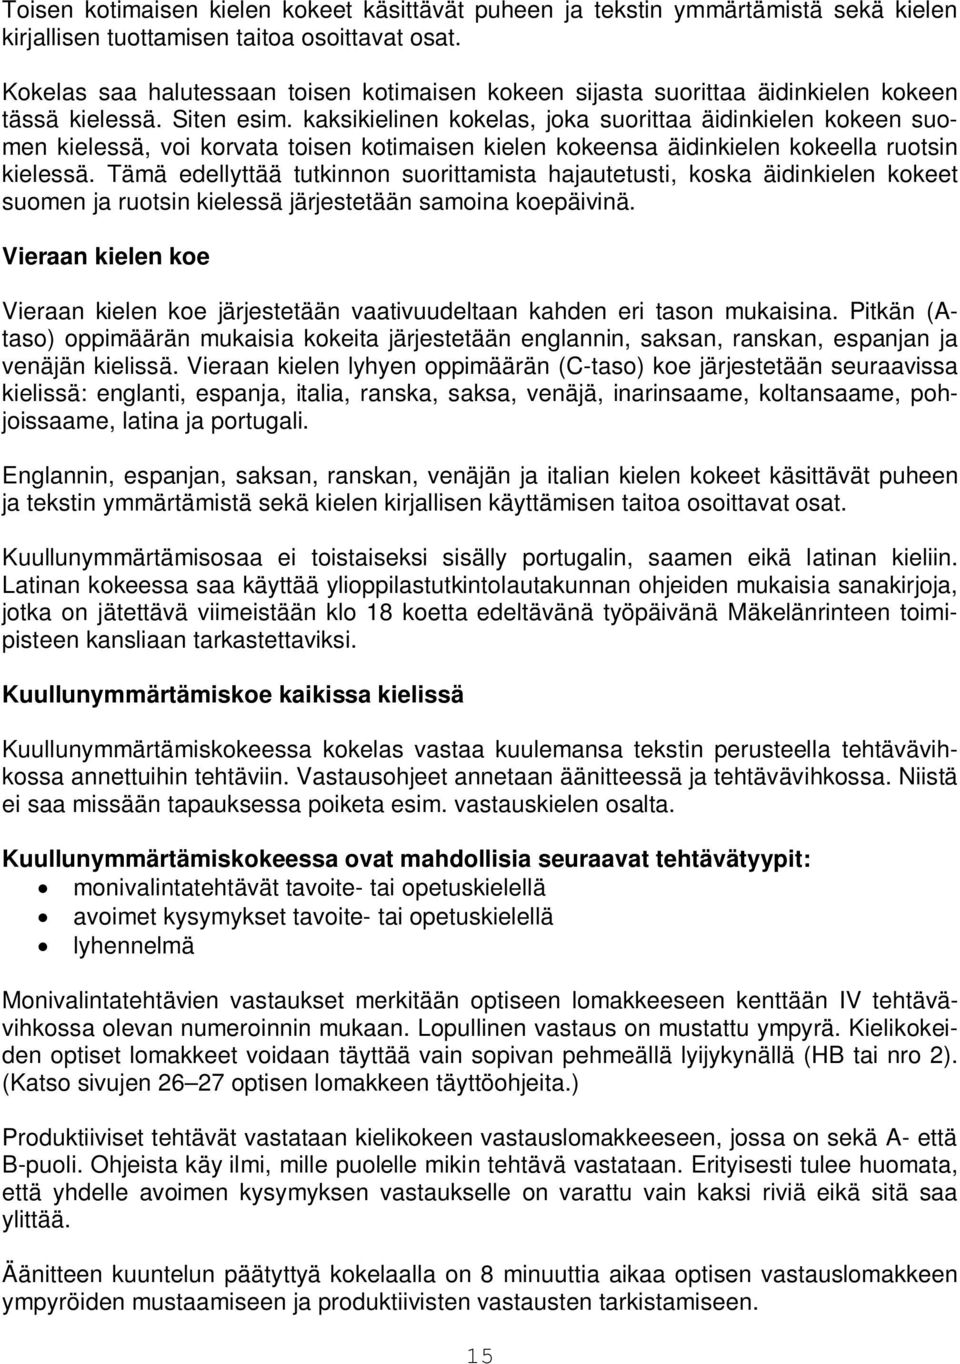 kaksikielinen kokelas, joka suorittaa äidinkielen kokeen suomen kielessä, voi korvata toisen kotimaisen kielen kokeensa äidinkielen kokeella ruotsin kielessä.